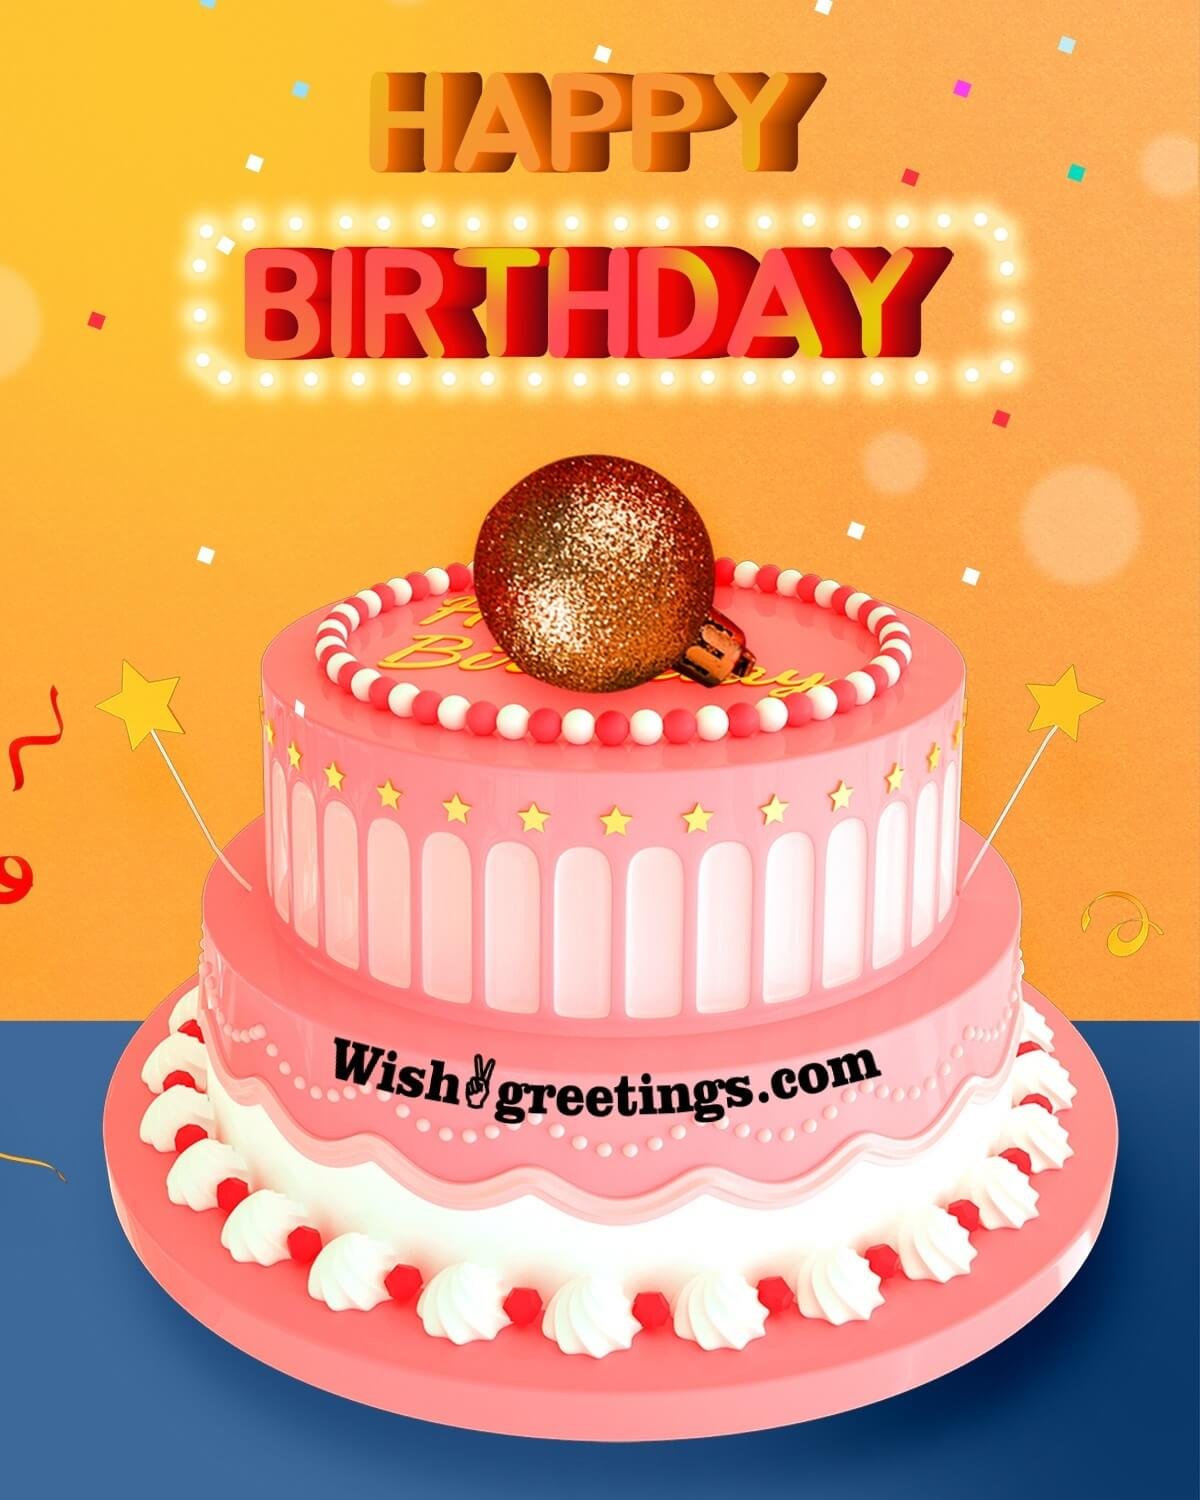 Top Wish Happy Birthday Cake Images Amazing Collection Wish Happy Birthday Cake Images